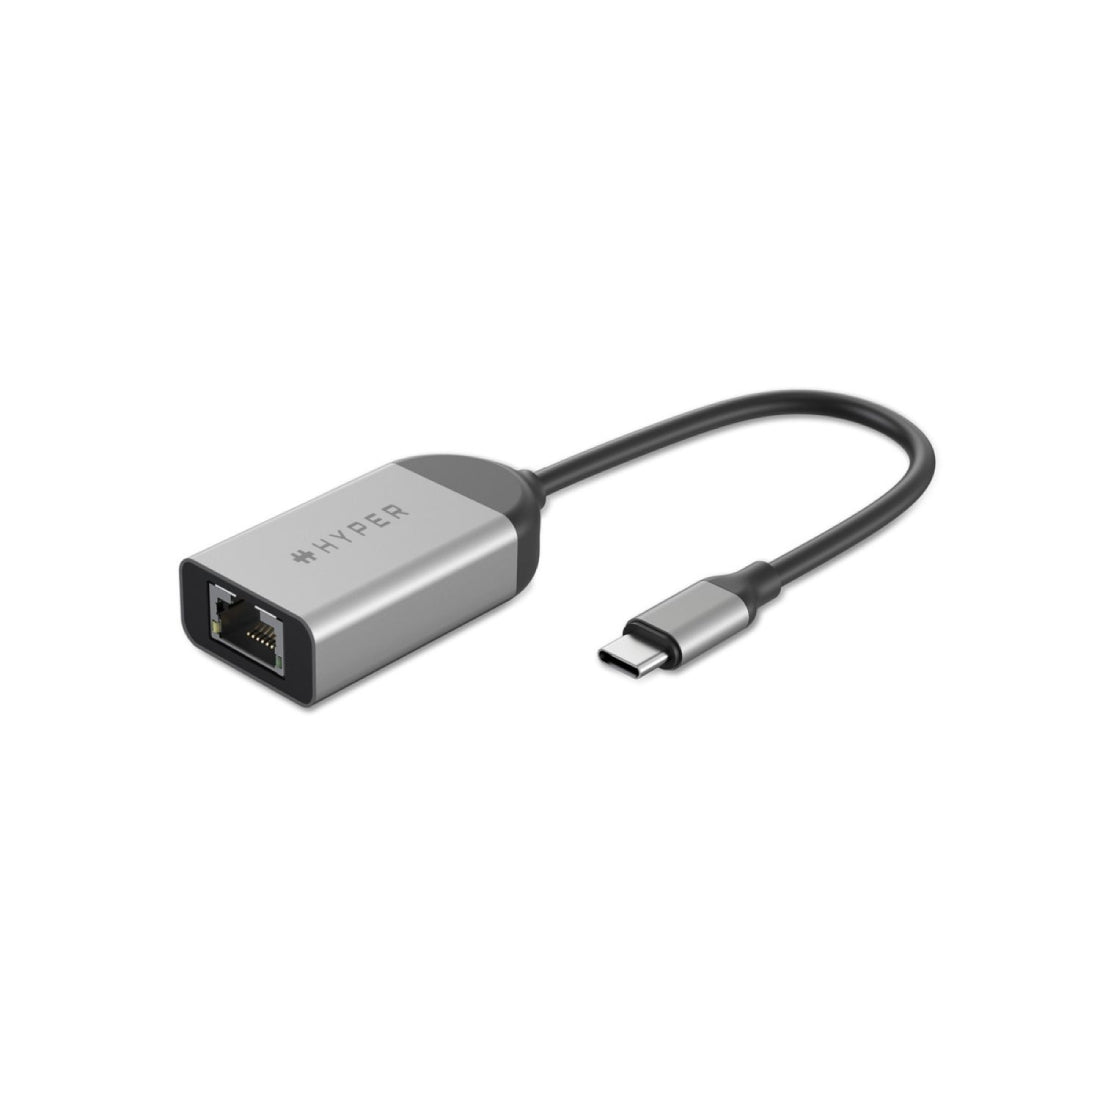 Hyper HyperDrive USB Type-C to 2.5G RJ45 Ethernet Adapter - محول - Store 974 | ستور ٩٧٤